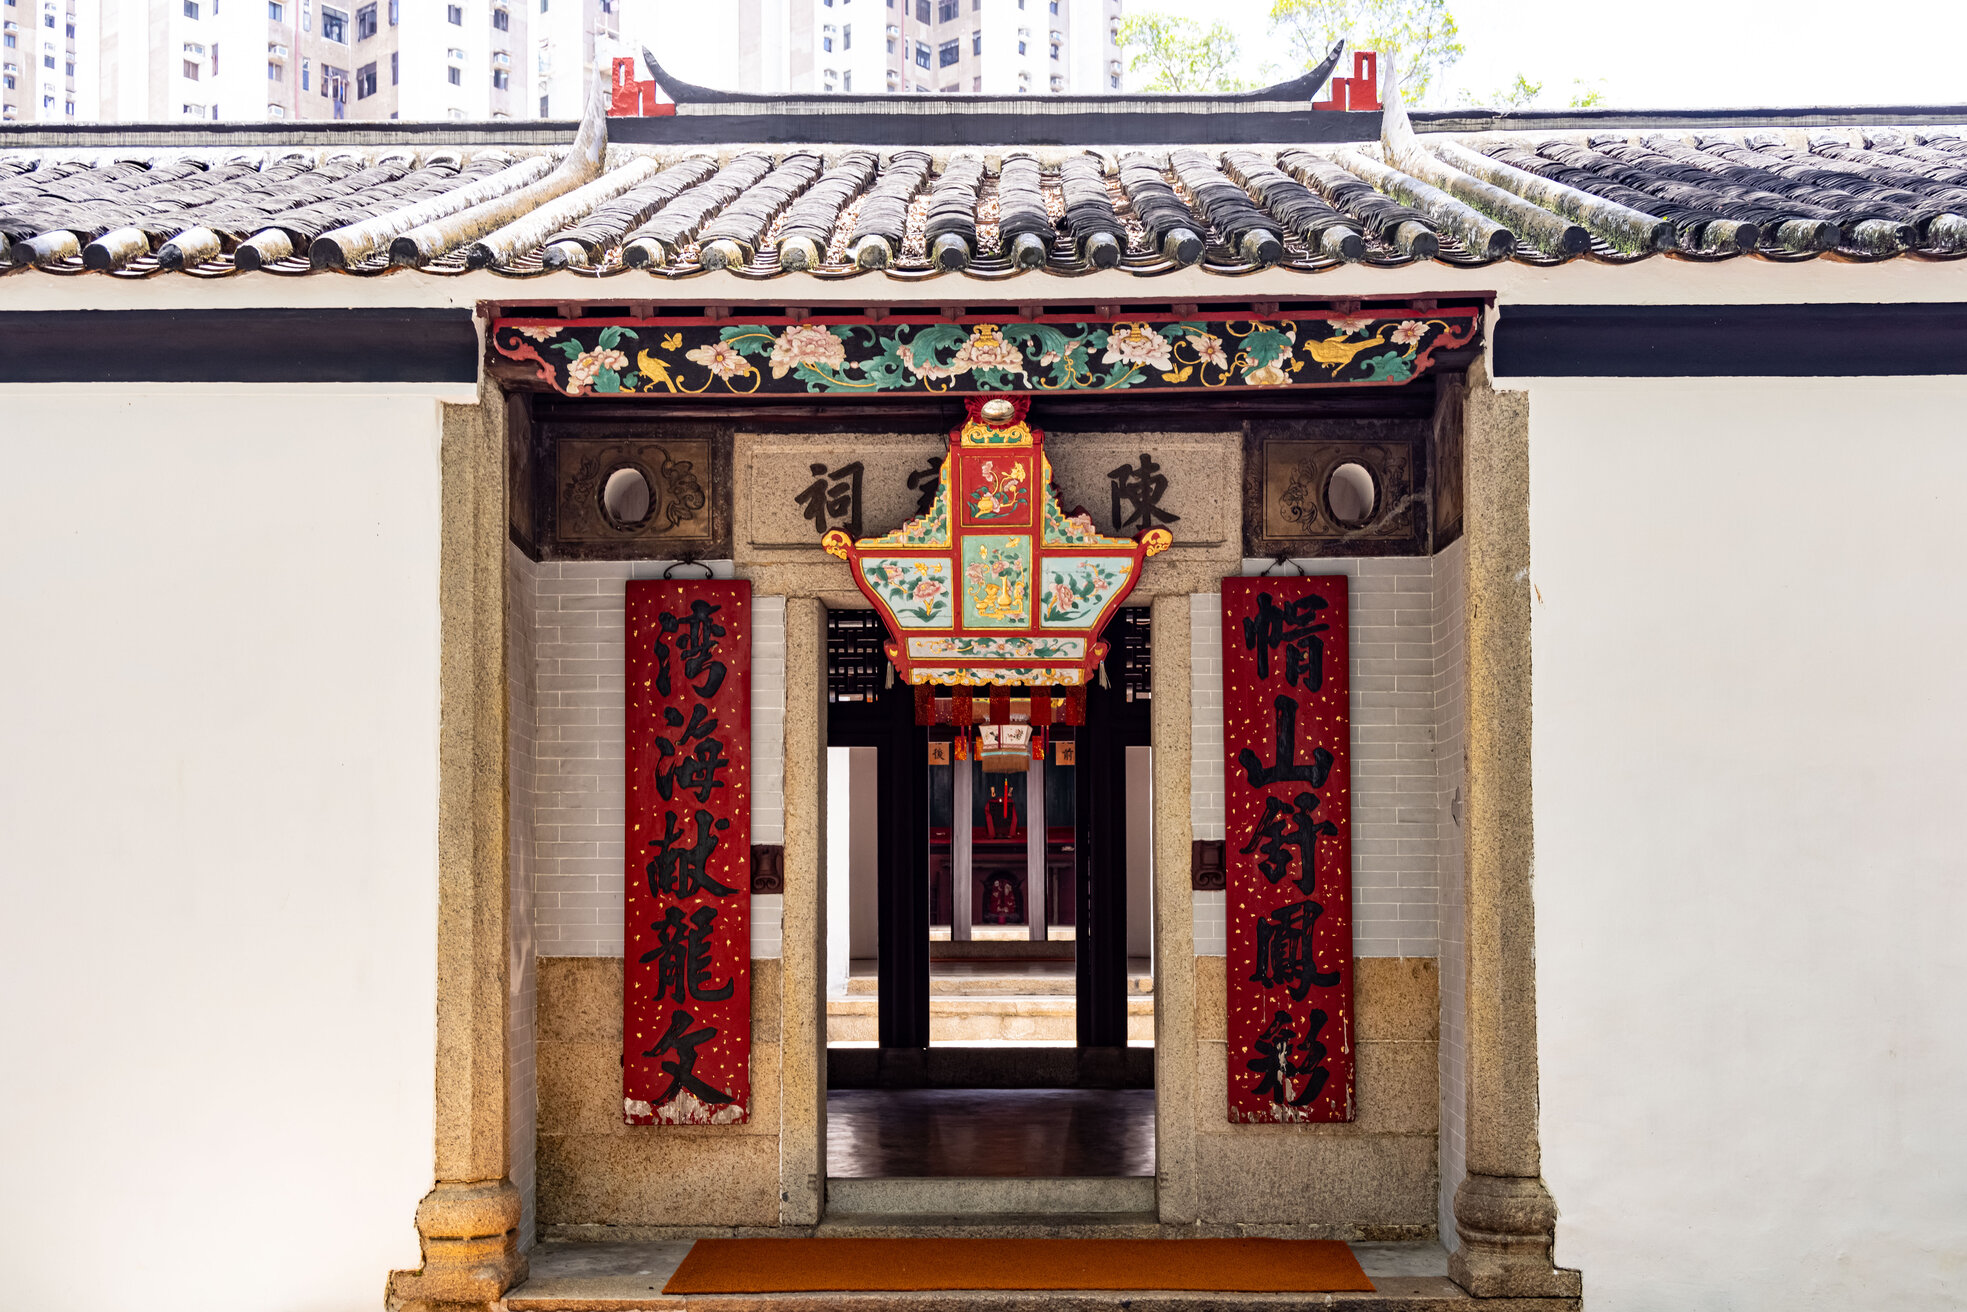 "Hong Kong Intangible Cultural Heritage Centre" at Sam Tung Uk Museum